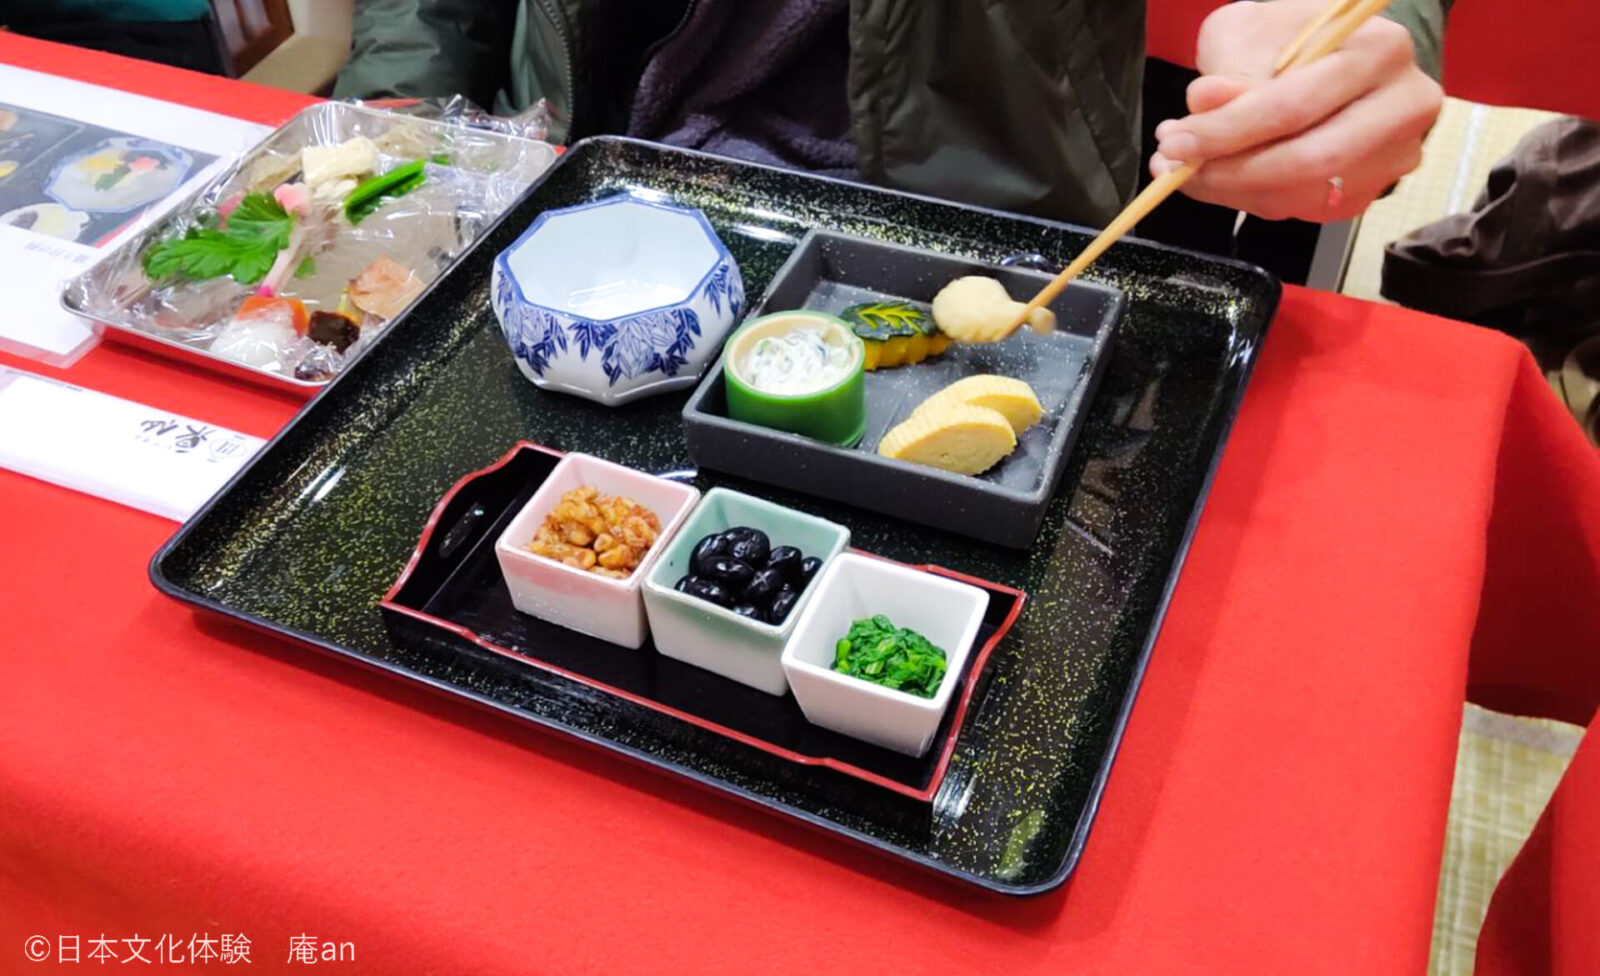 【京都の仕出し文化を体験】京都で味わう老舗仕出し割烹の会席盛り付け体験 画像3